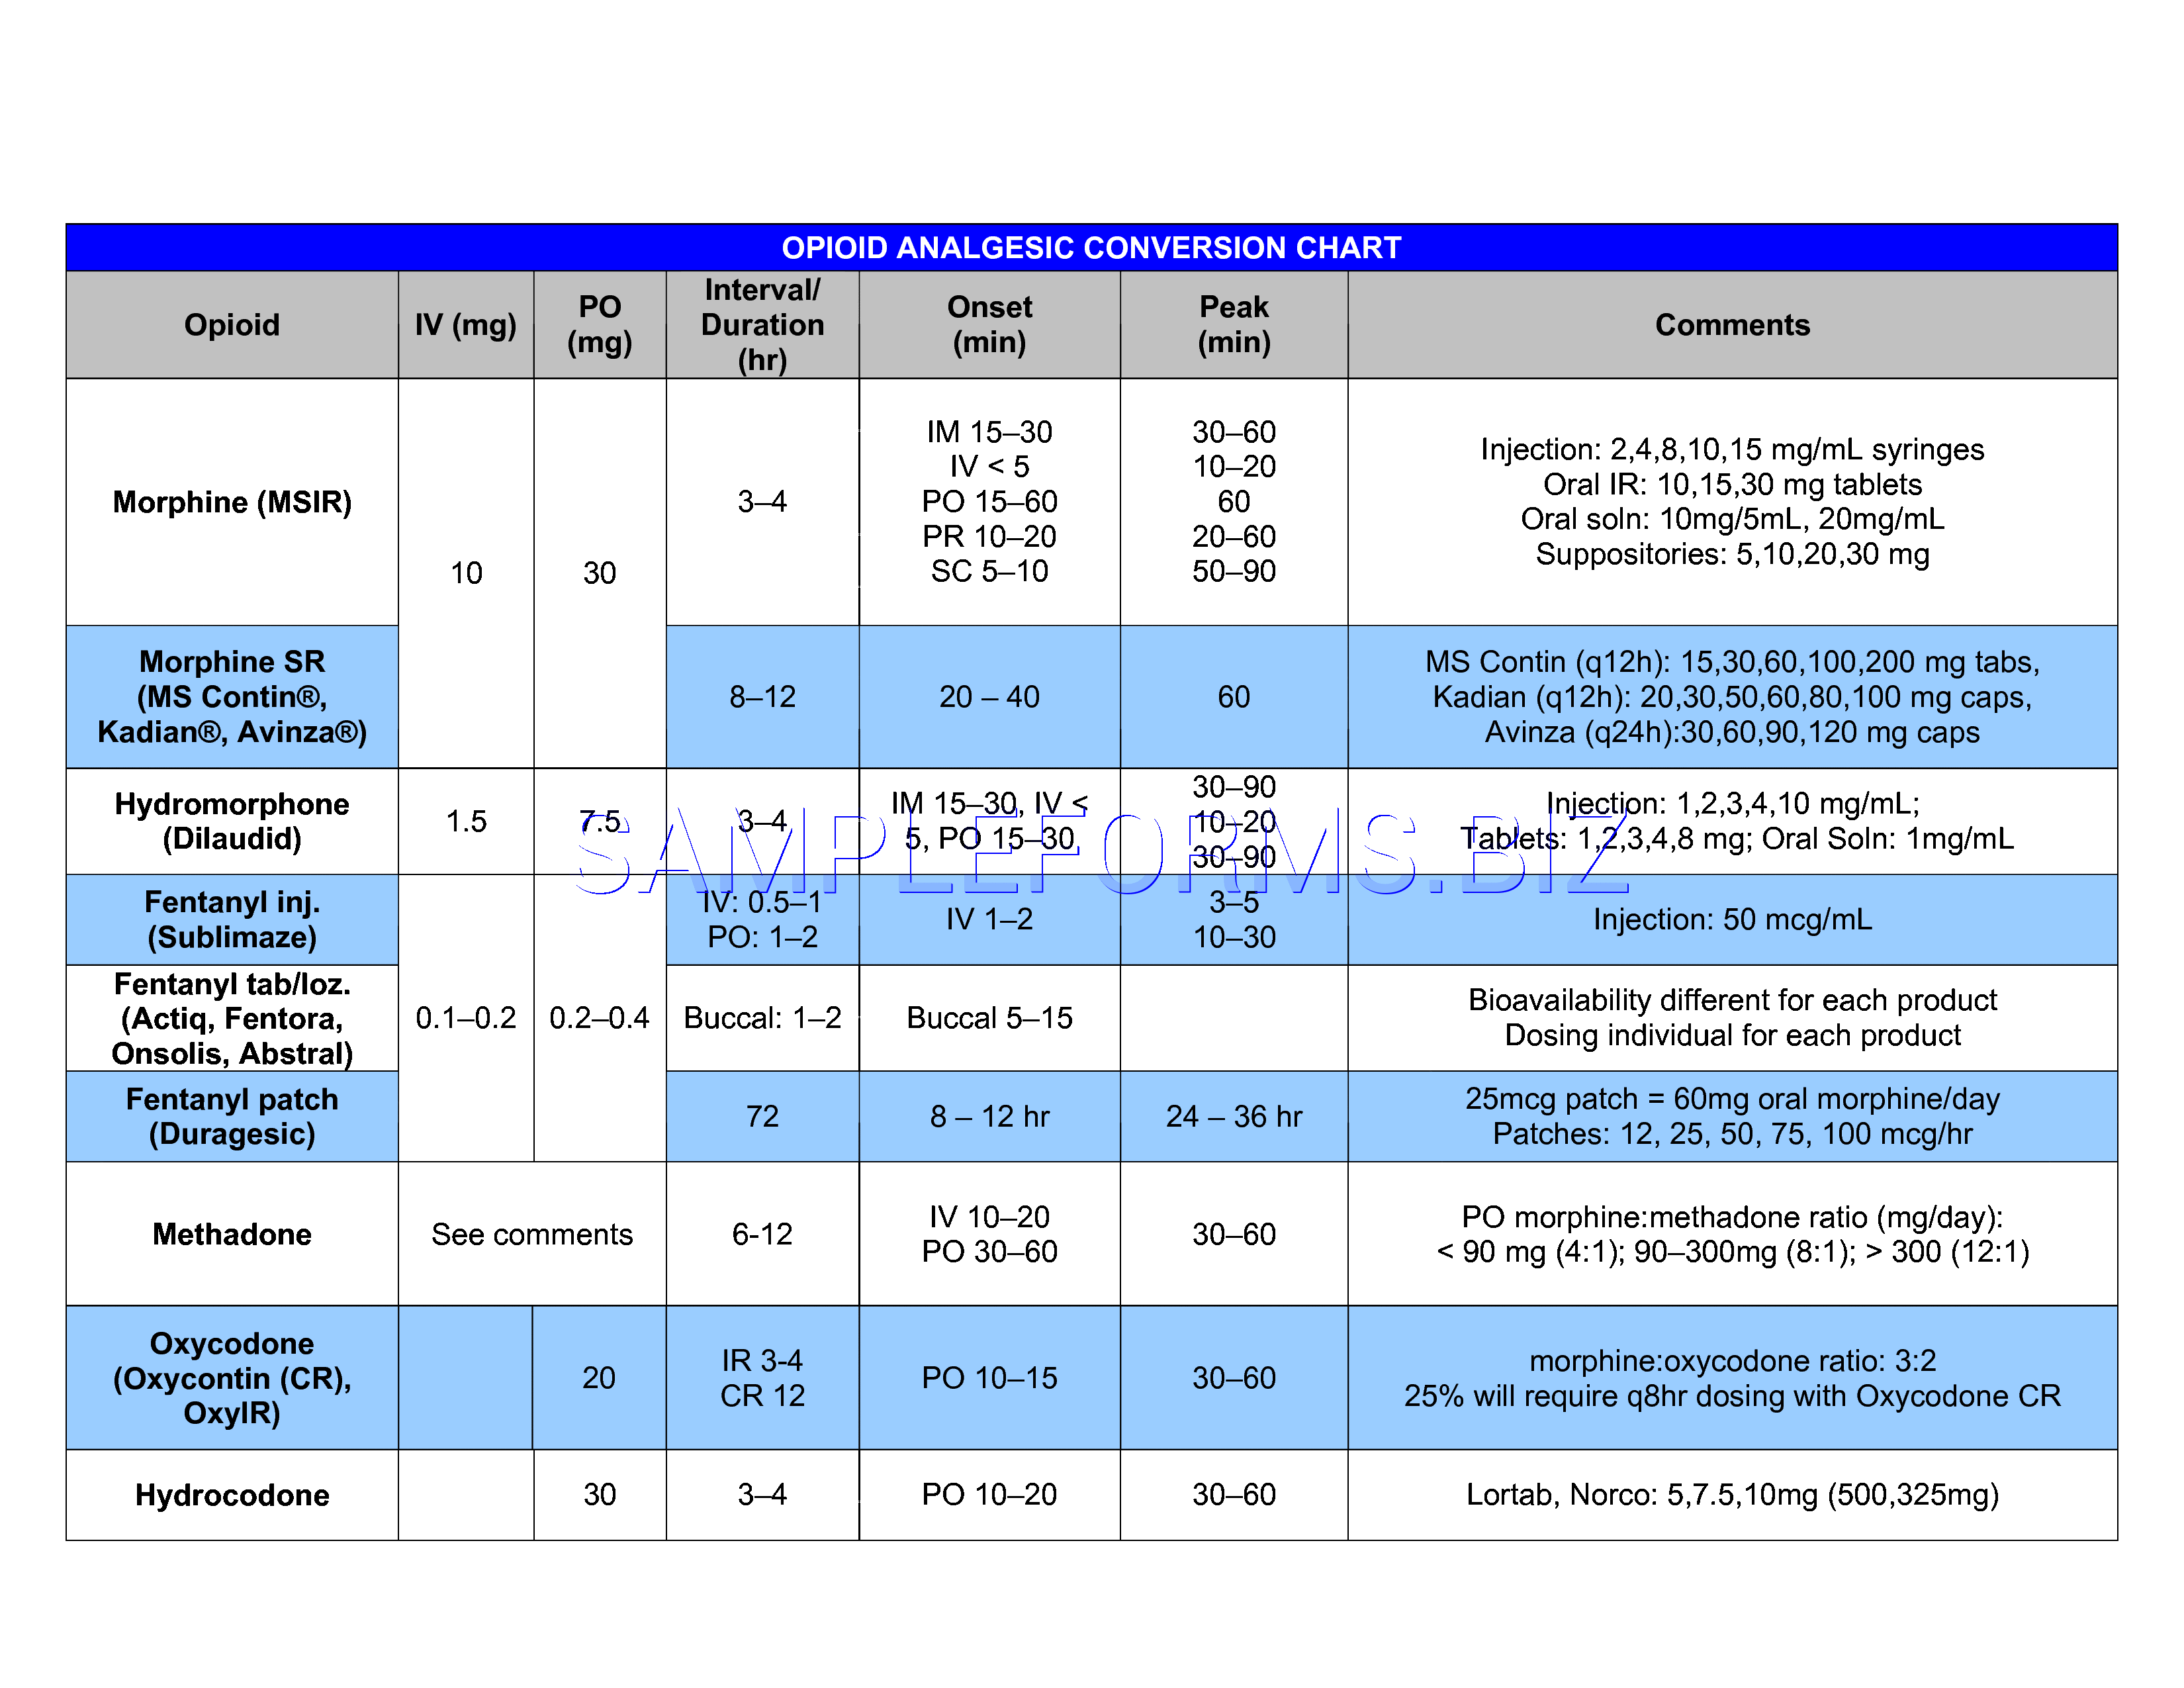 Opana Conversion Chart